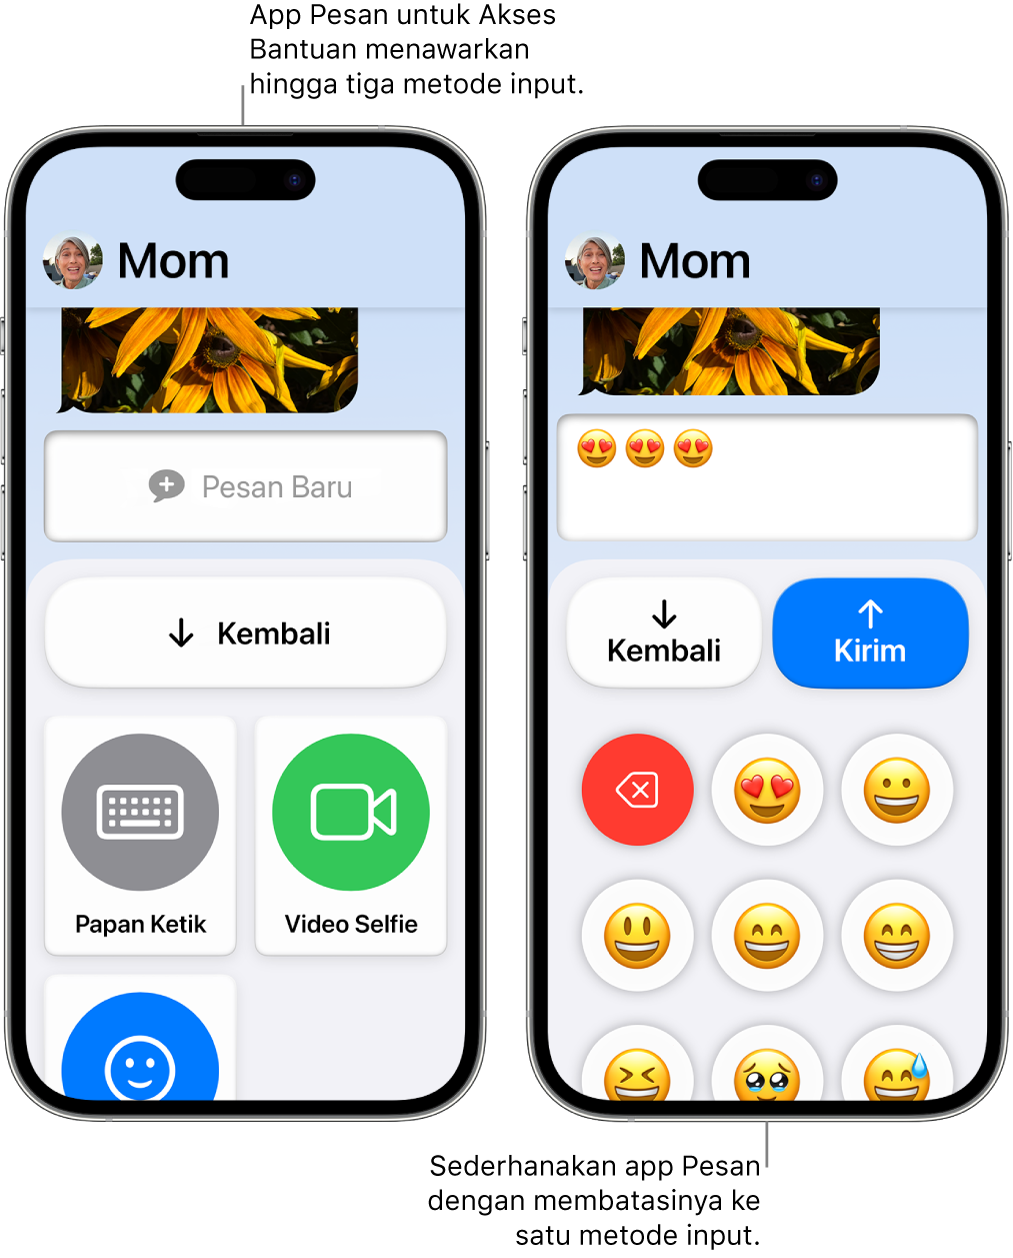 Dua iPhone dalam Akses Bantuan. Satu iPhone menampilkan app Pesan dengan metode input yang dapat dipilih pengguna, seperti Papan Ketik atau Selfie Video. Yang lainnya menampilkan pesan yang sedang dikirim menggunakan papan ketik hanya emoji.